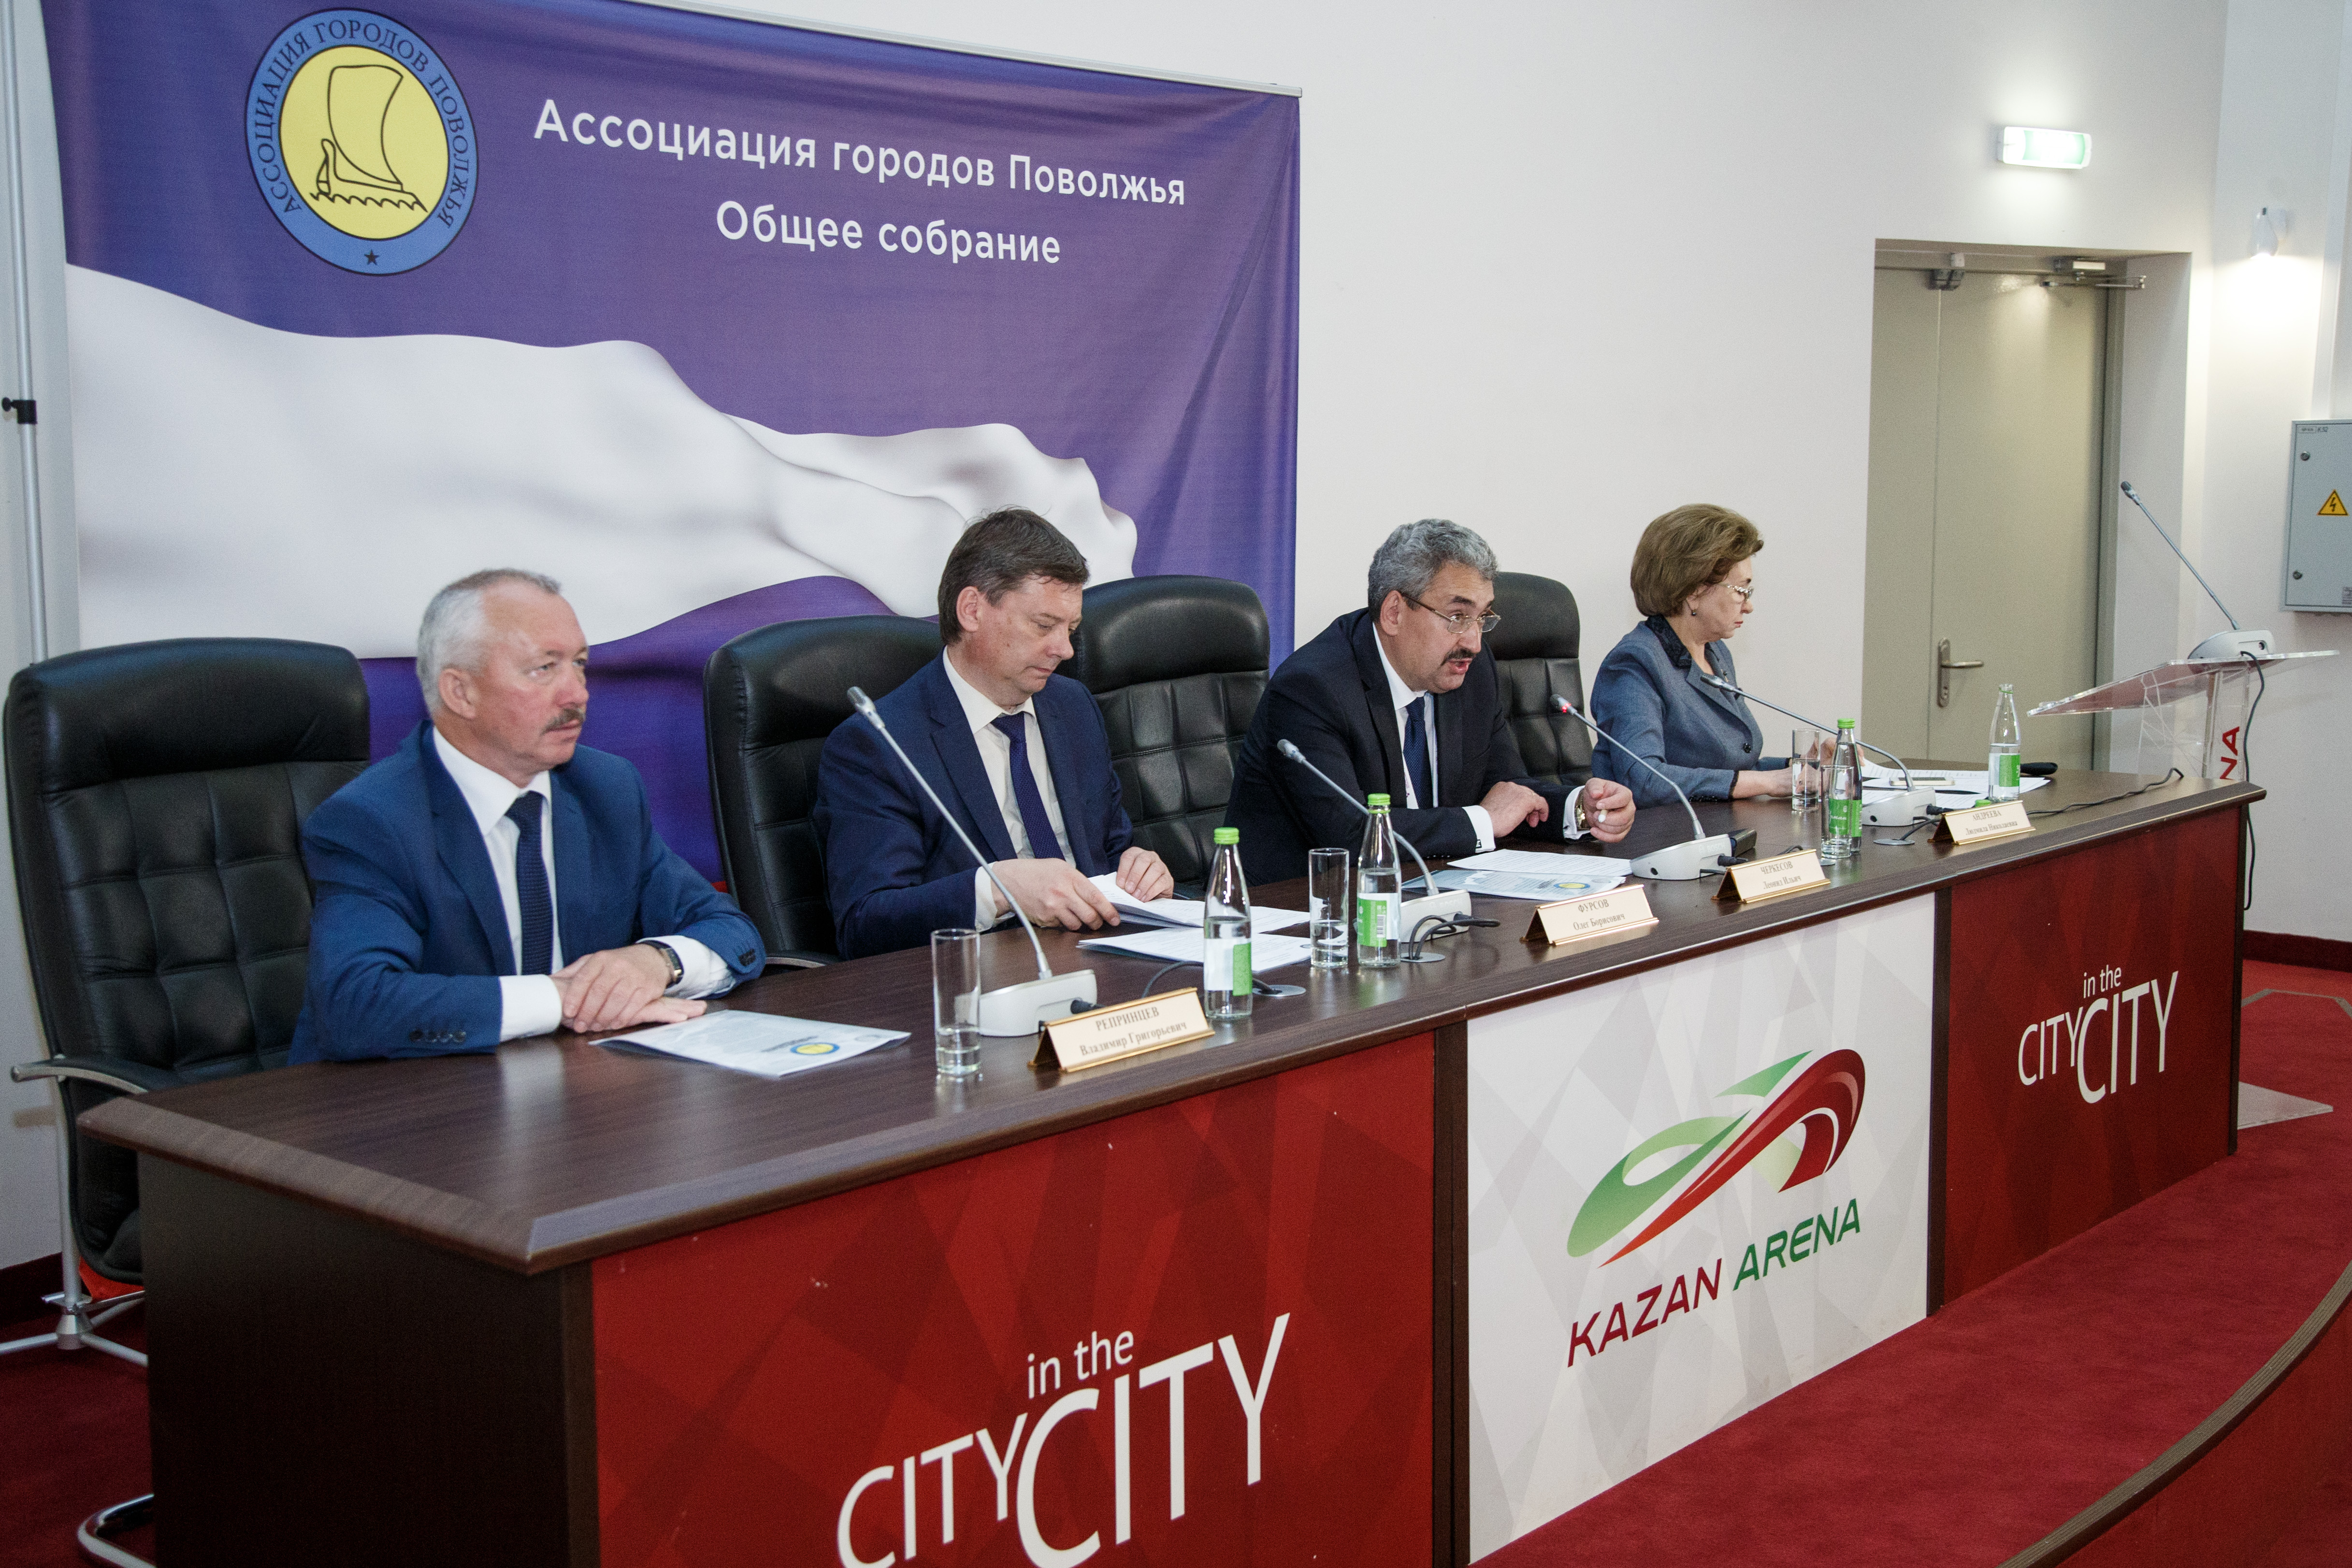 Заседание Правление Ассоциации городов Поволжья. 27 мая 2016 года, город Казань.